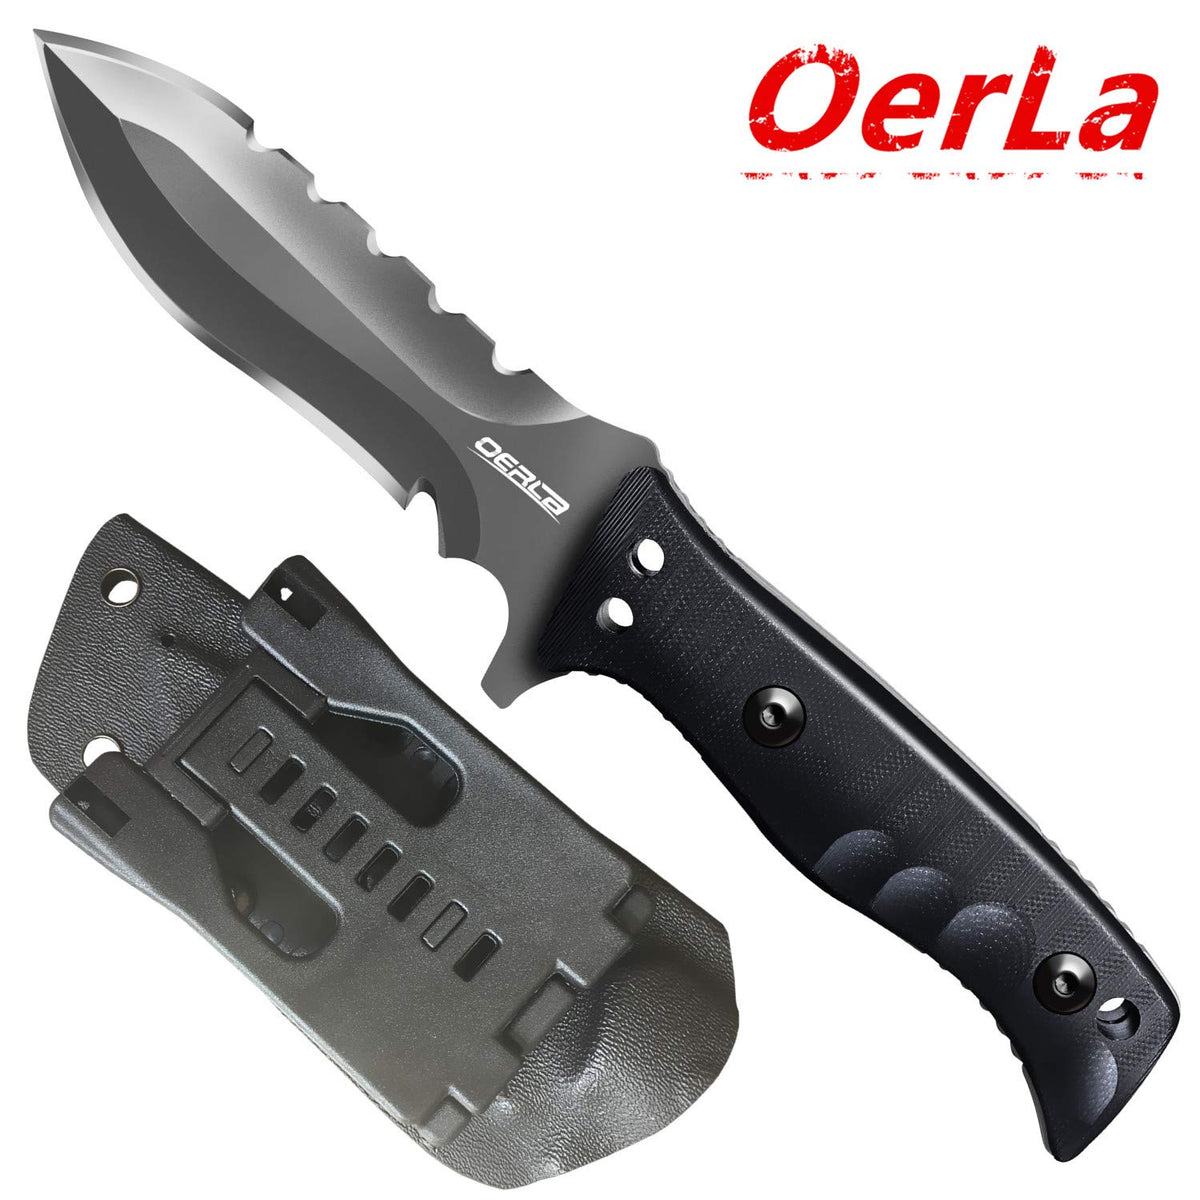 OL-0021SD Knife Fixed Blade OERLA